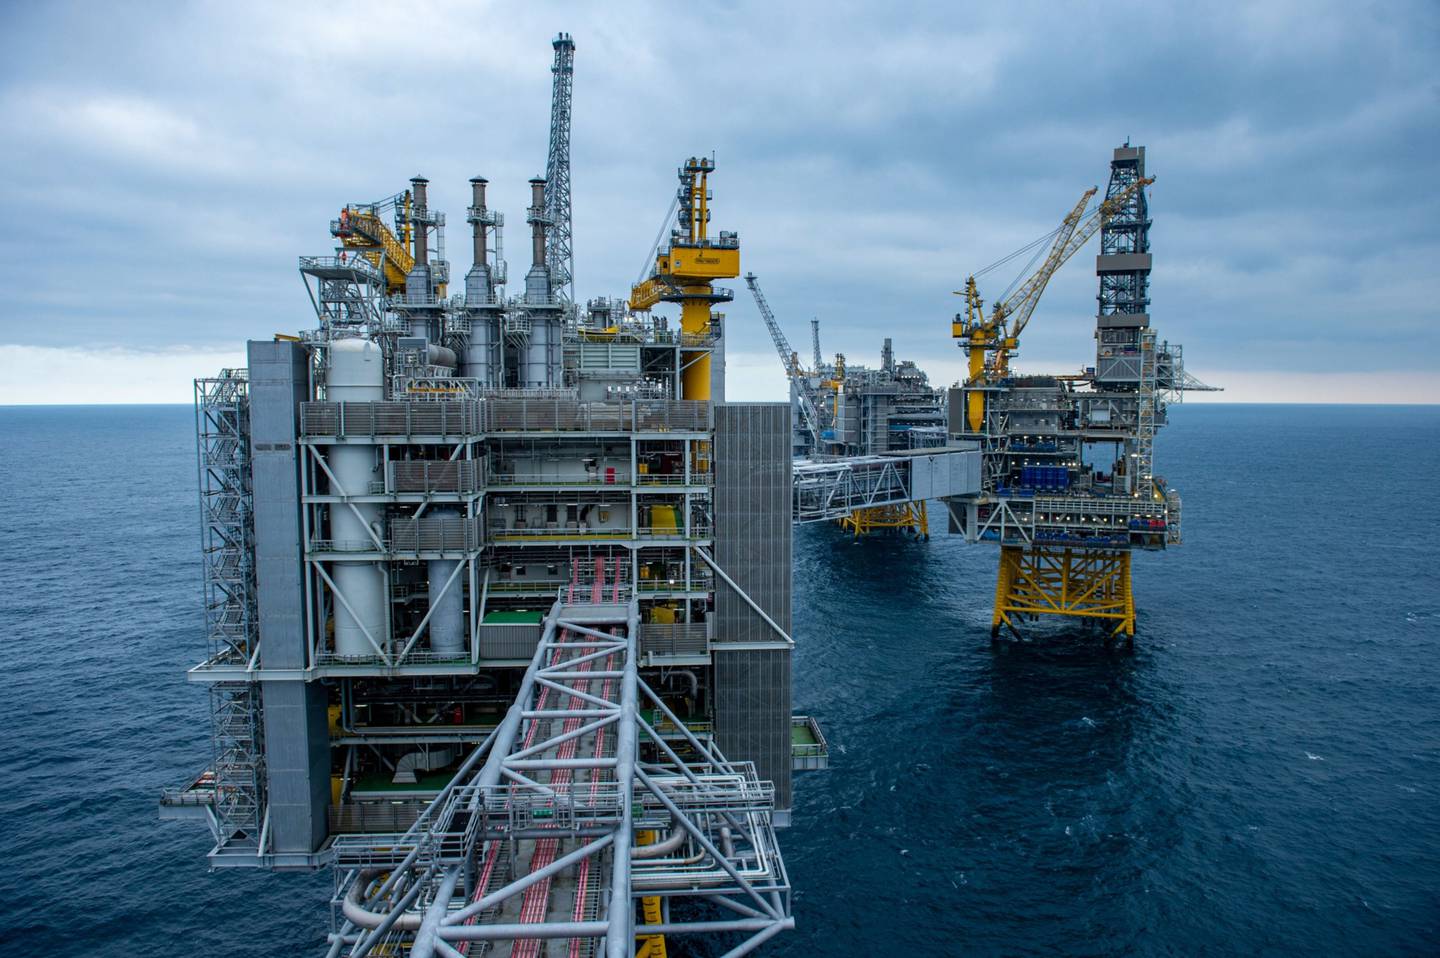 La plataforma de perforación de petróleo en alta mar Equinor ASA en el campo petrolero Johan Sverdrup en el Mar del Norte, Noruega.